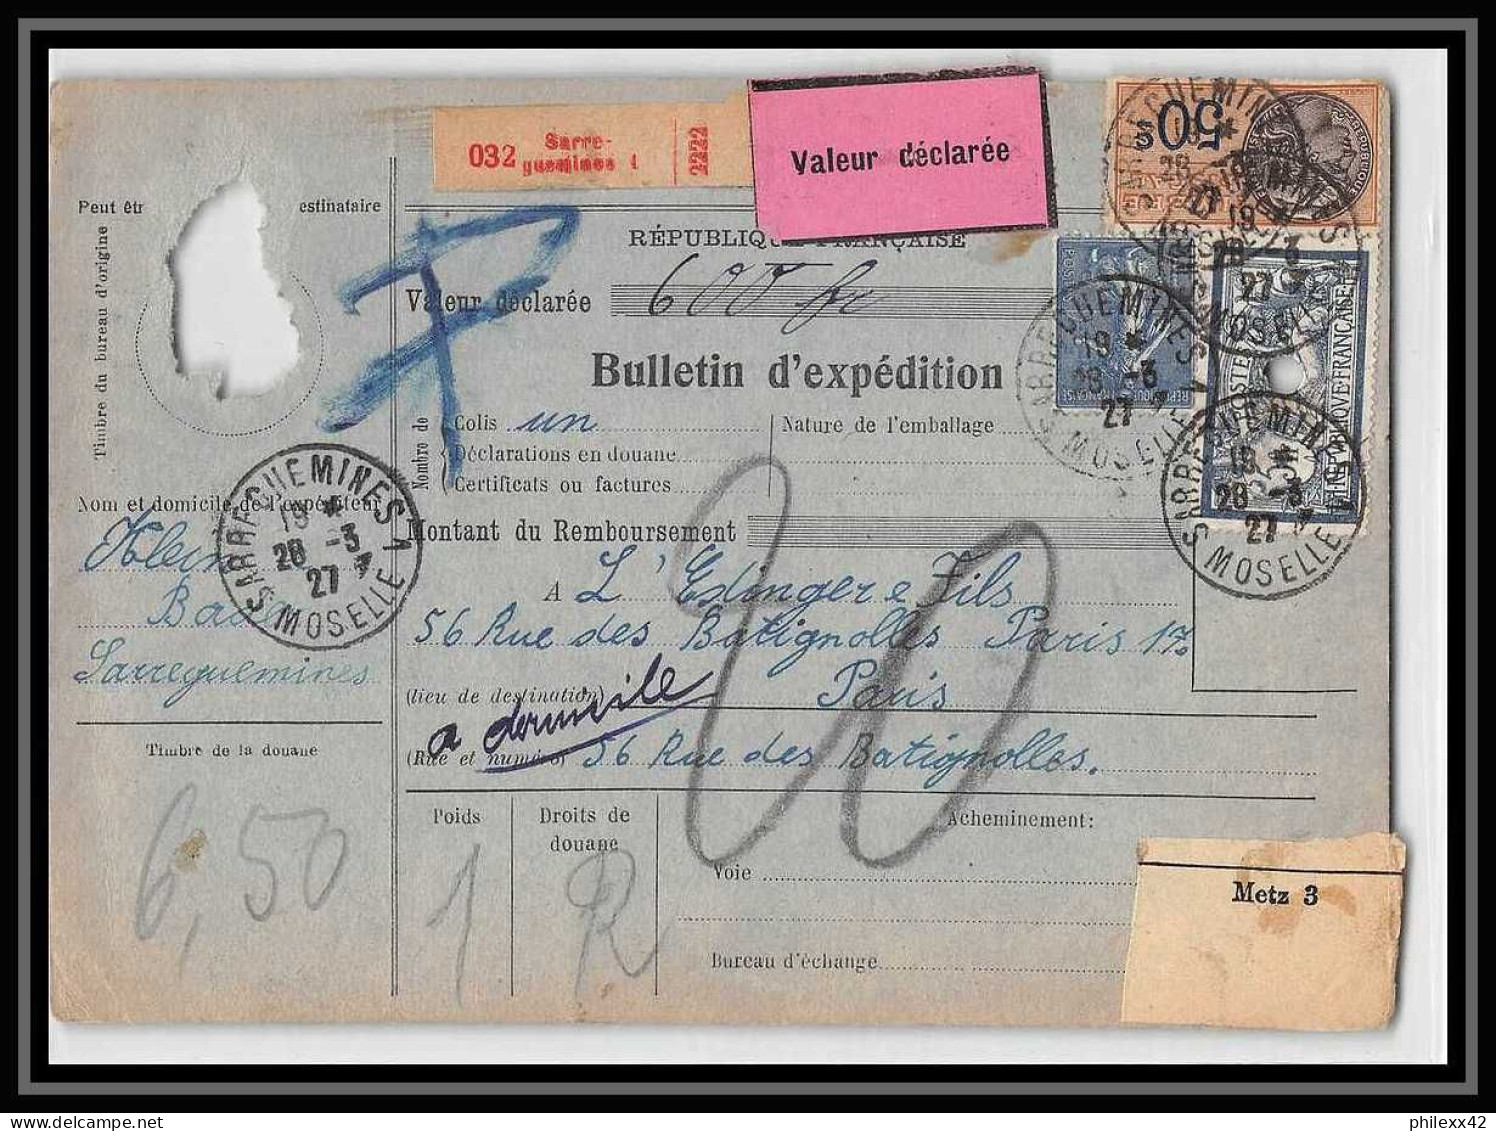 25020 Bulletin D'expédition France Colis Postaux Fiscal Haut Rhin 1927 Guebwiller Semeuse Merson 123 Valeur Déclarée - Cartas & Documentos